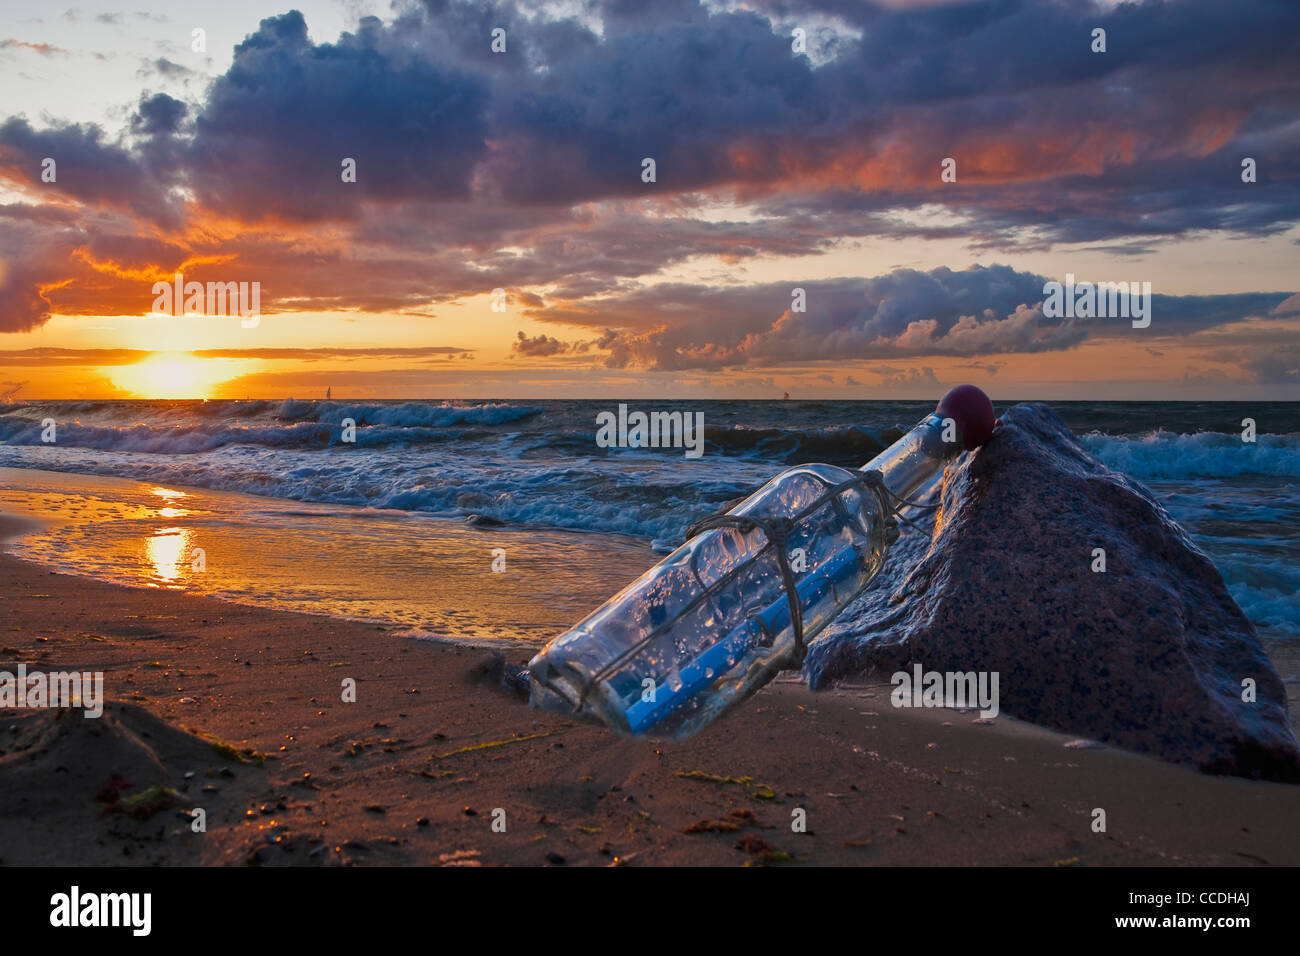 Photo détail d'un message dans une bouteille, se penchant sur une pierre au bord de la mer Banque D'Images